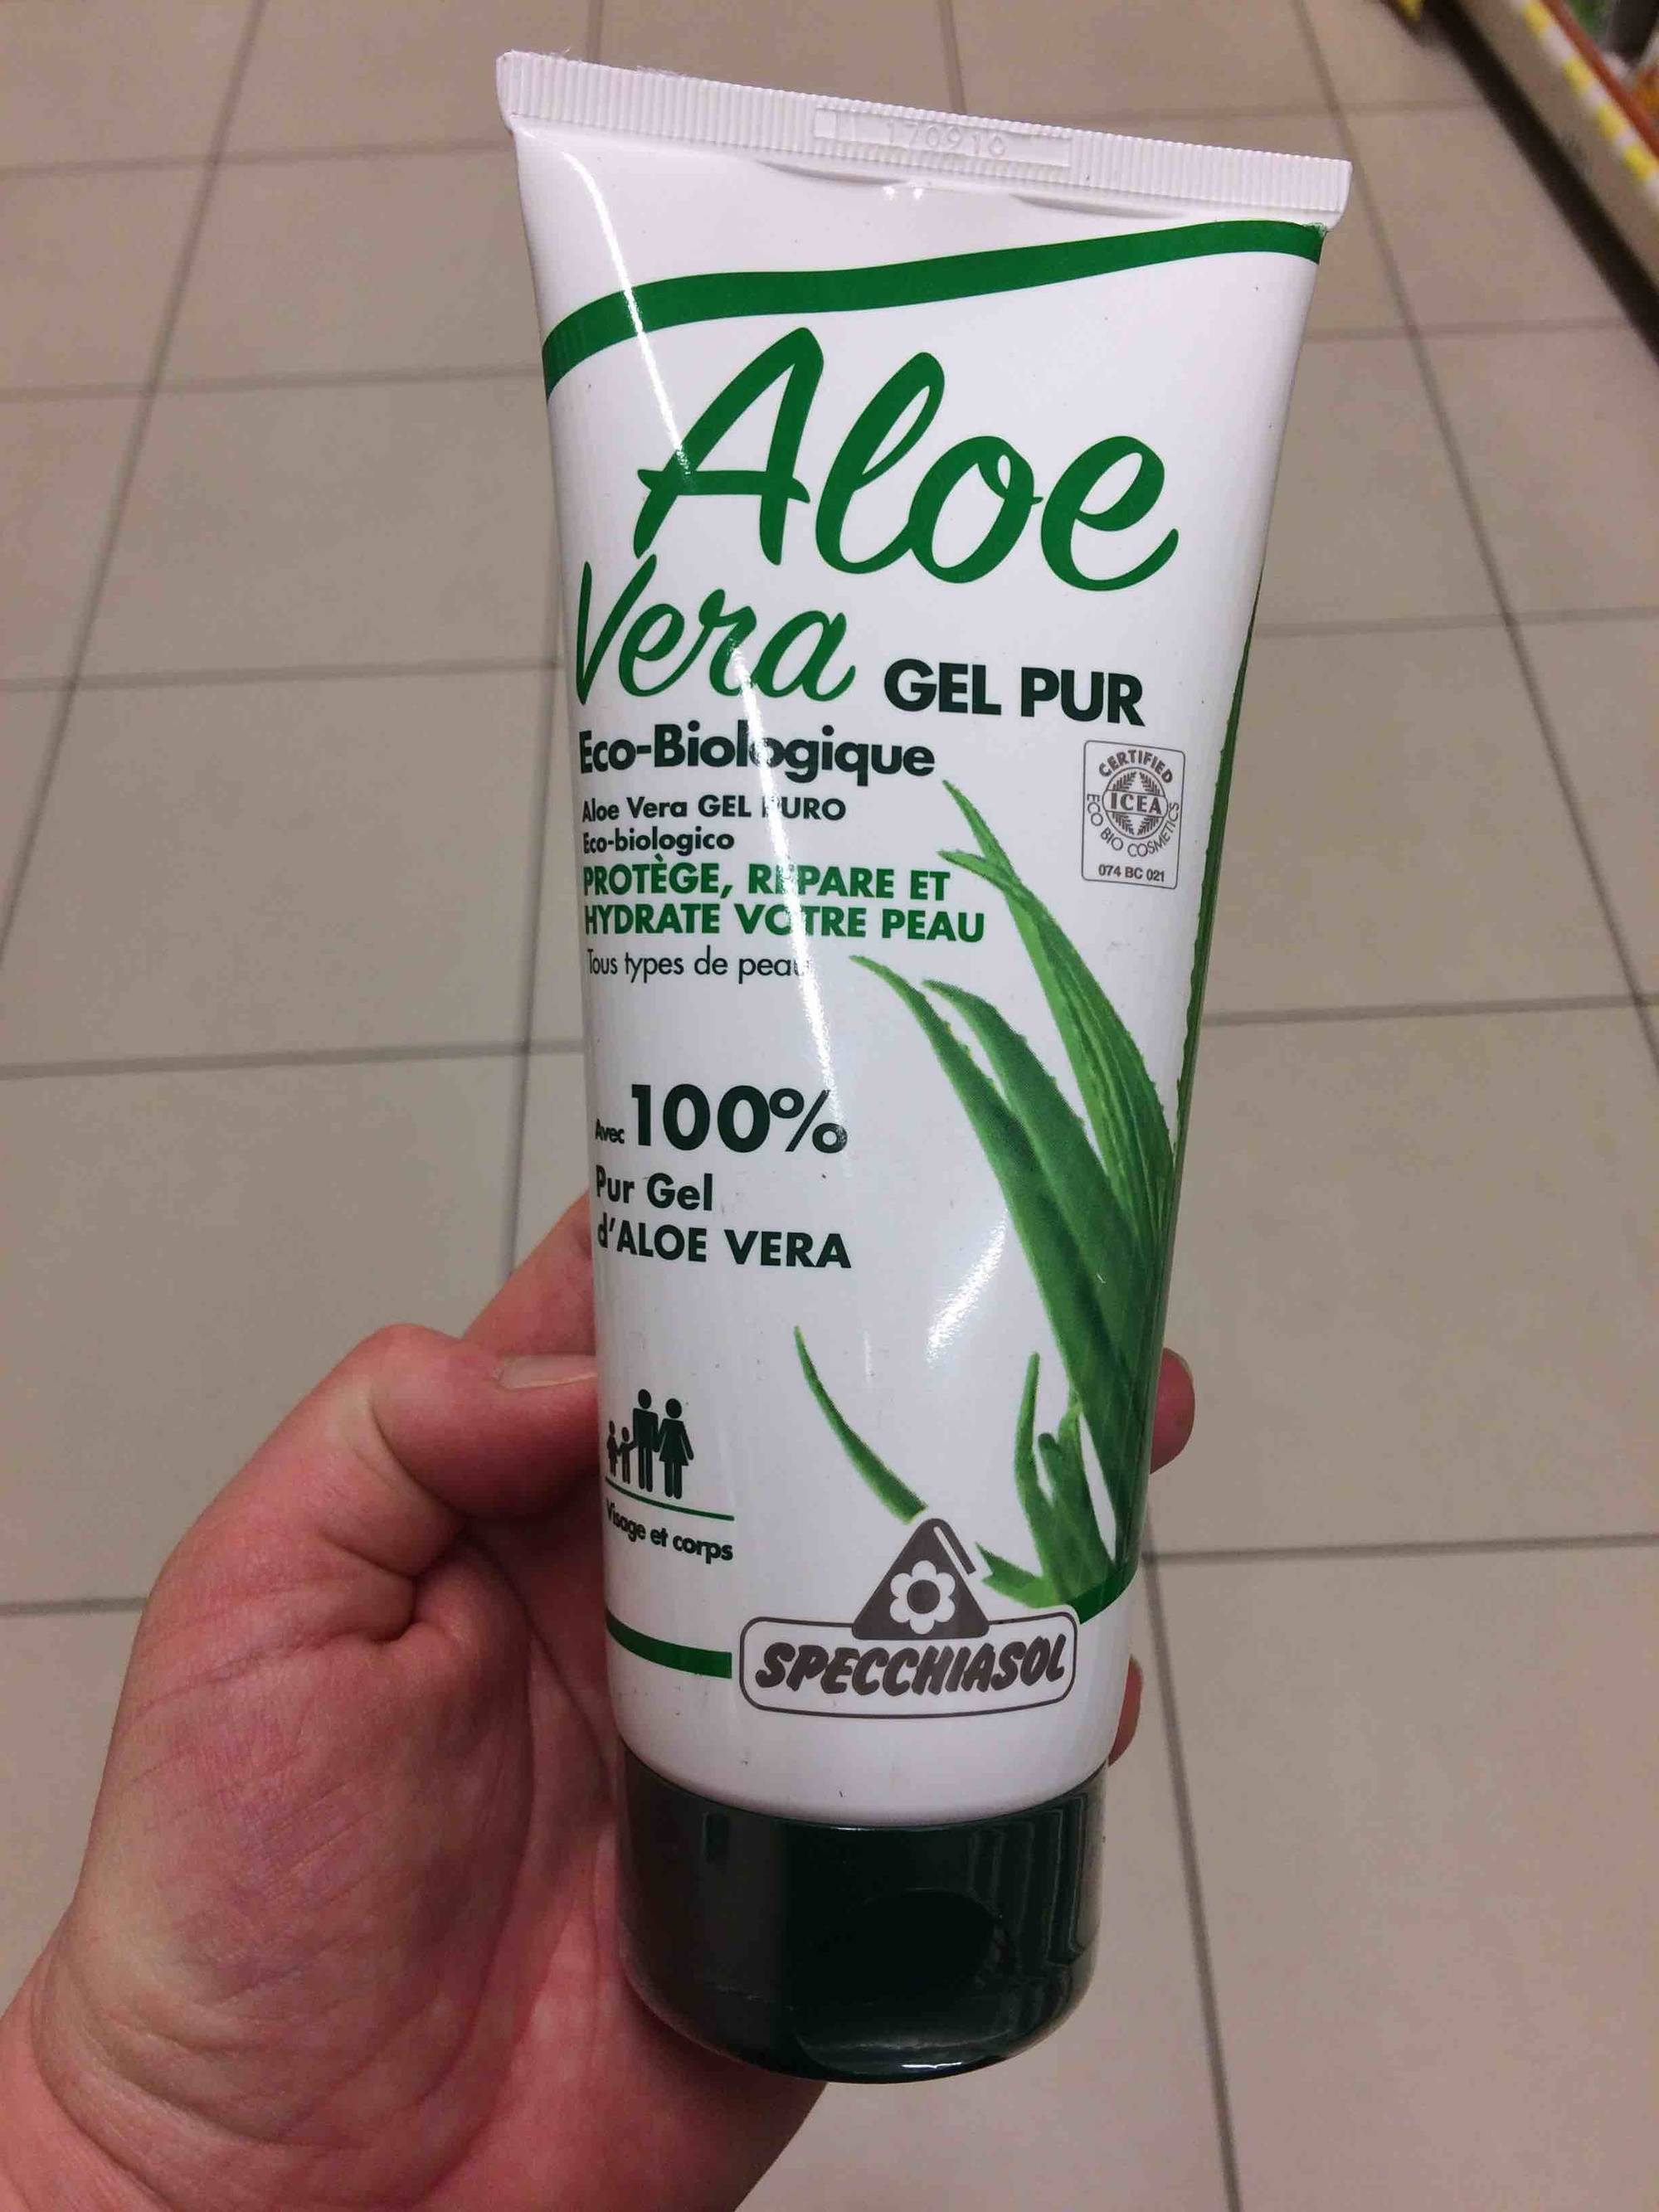 SPECCHIASOL - Aloe vera gel pur - Eco-biologique - Protège, répare et hydrate votre peau